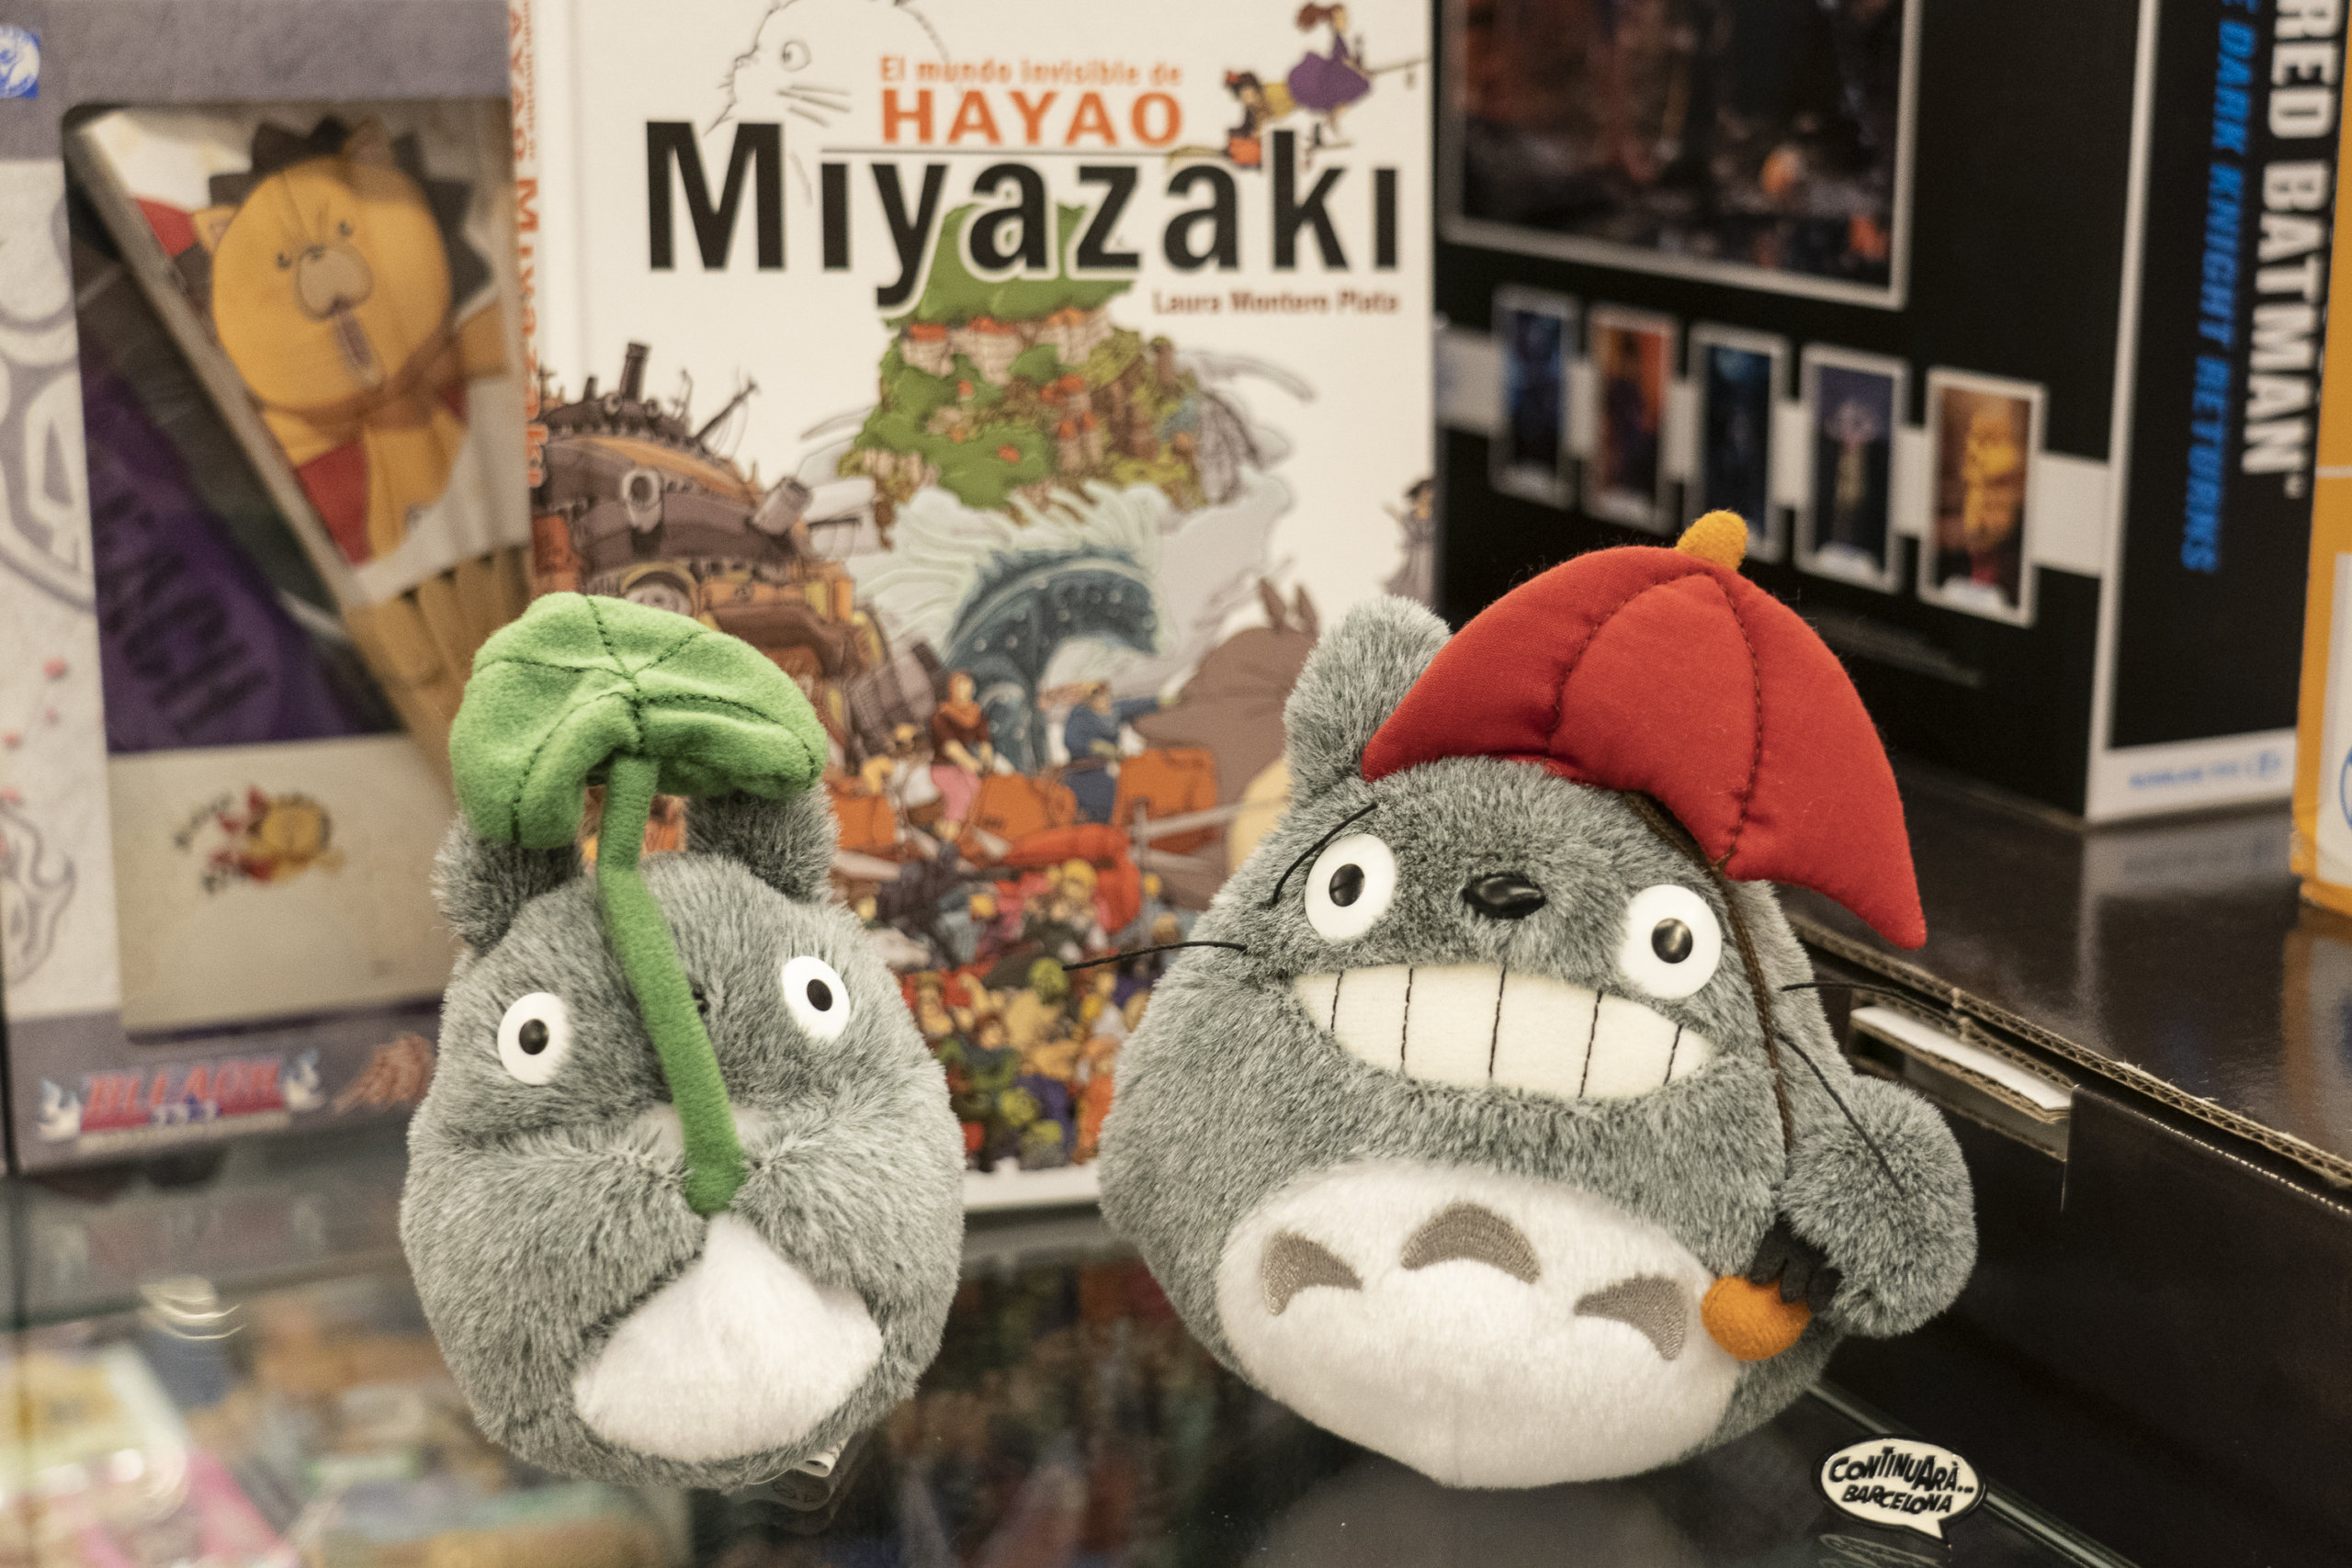 Hayao Miyazaki, el director de Totoro, va participar en sèries com ‘Heidi’ o ‘Marco’. Llibre i peluixos a la botiga Continuarà, a Barcelona / Mireia Comas